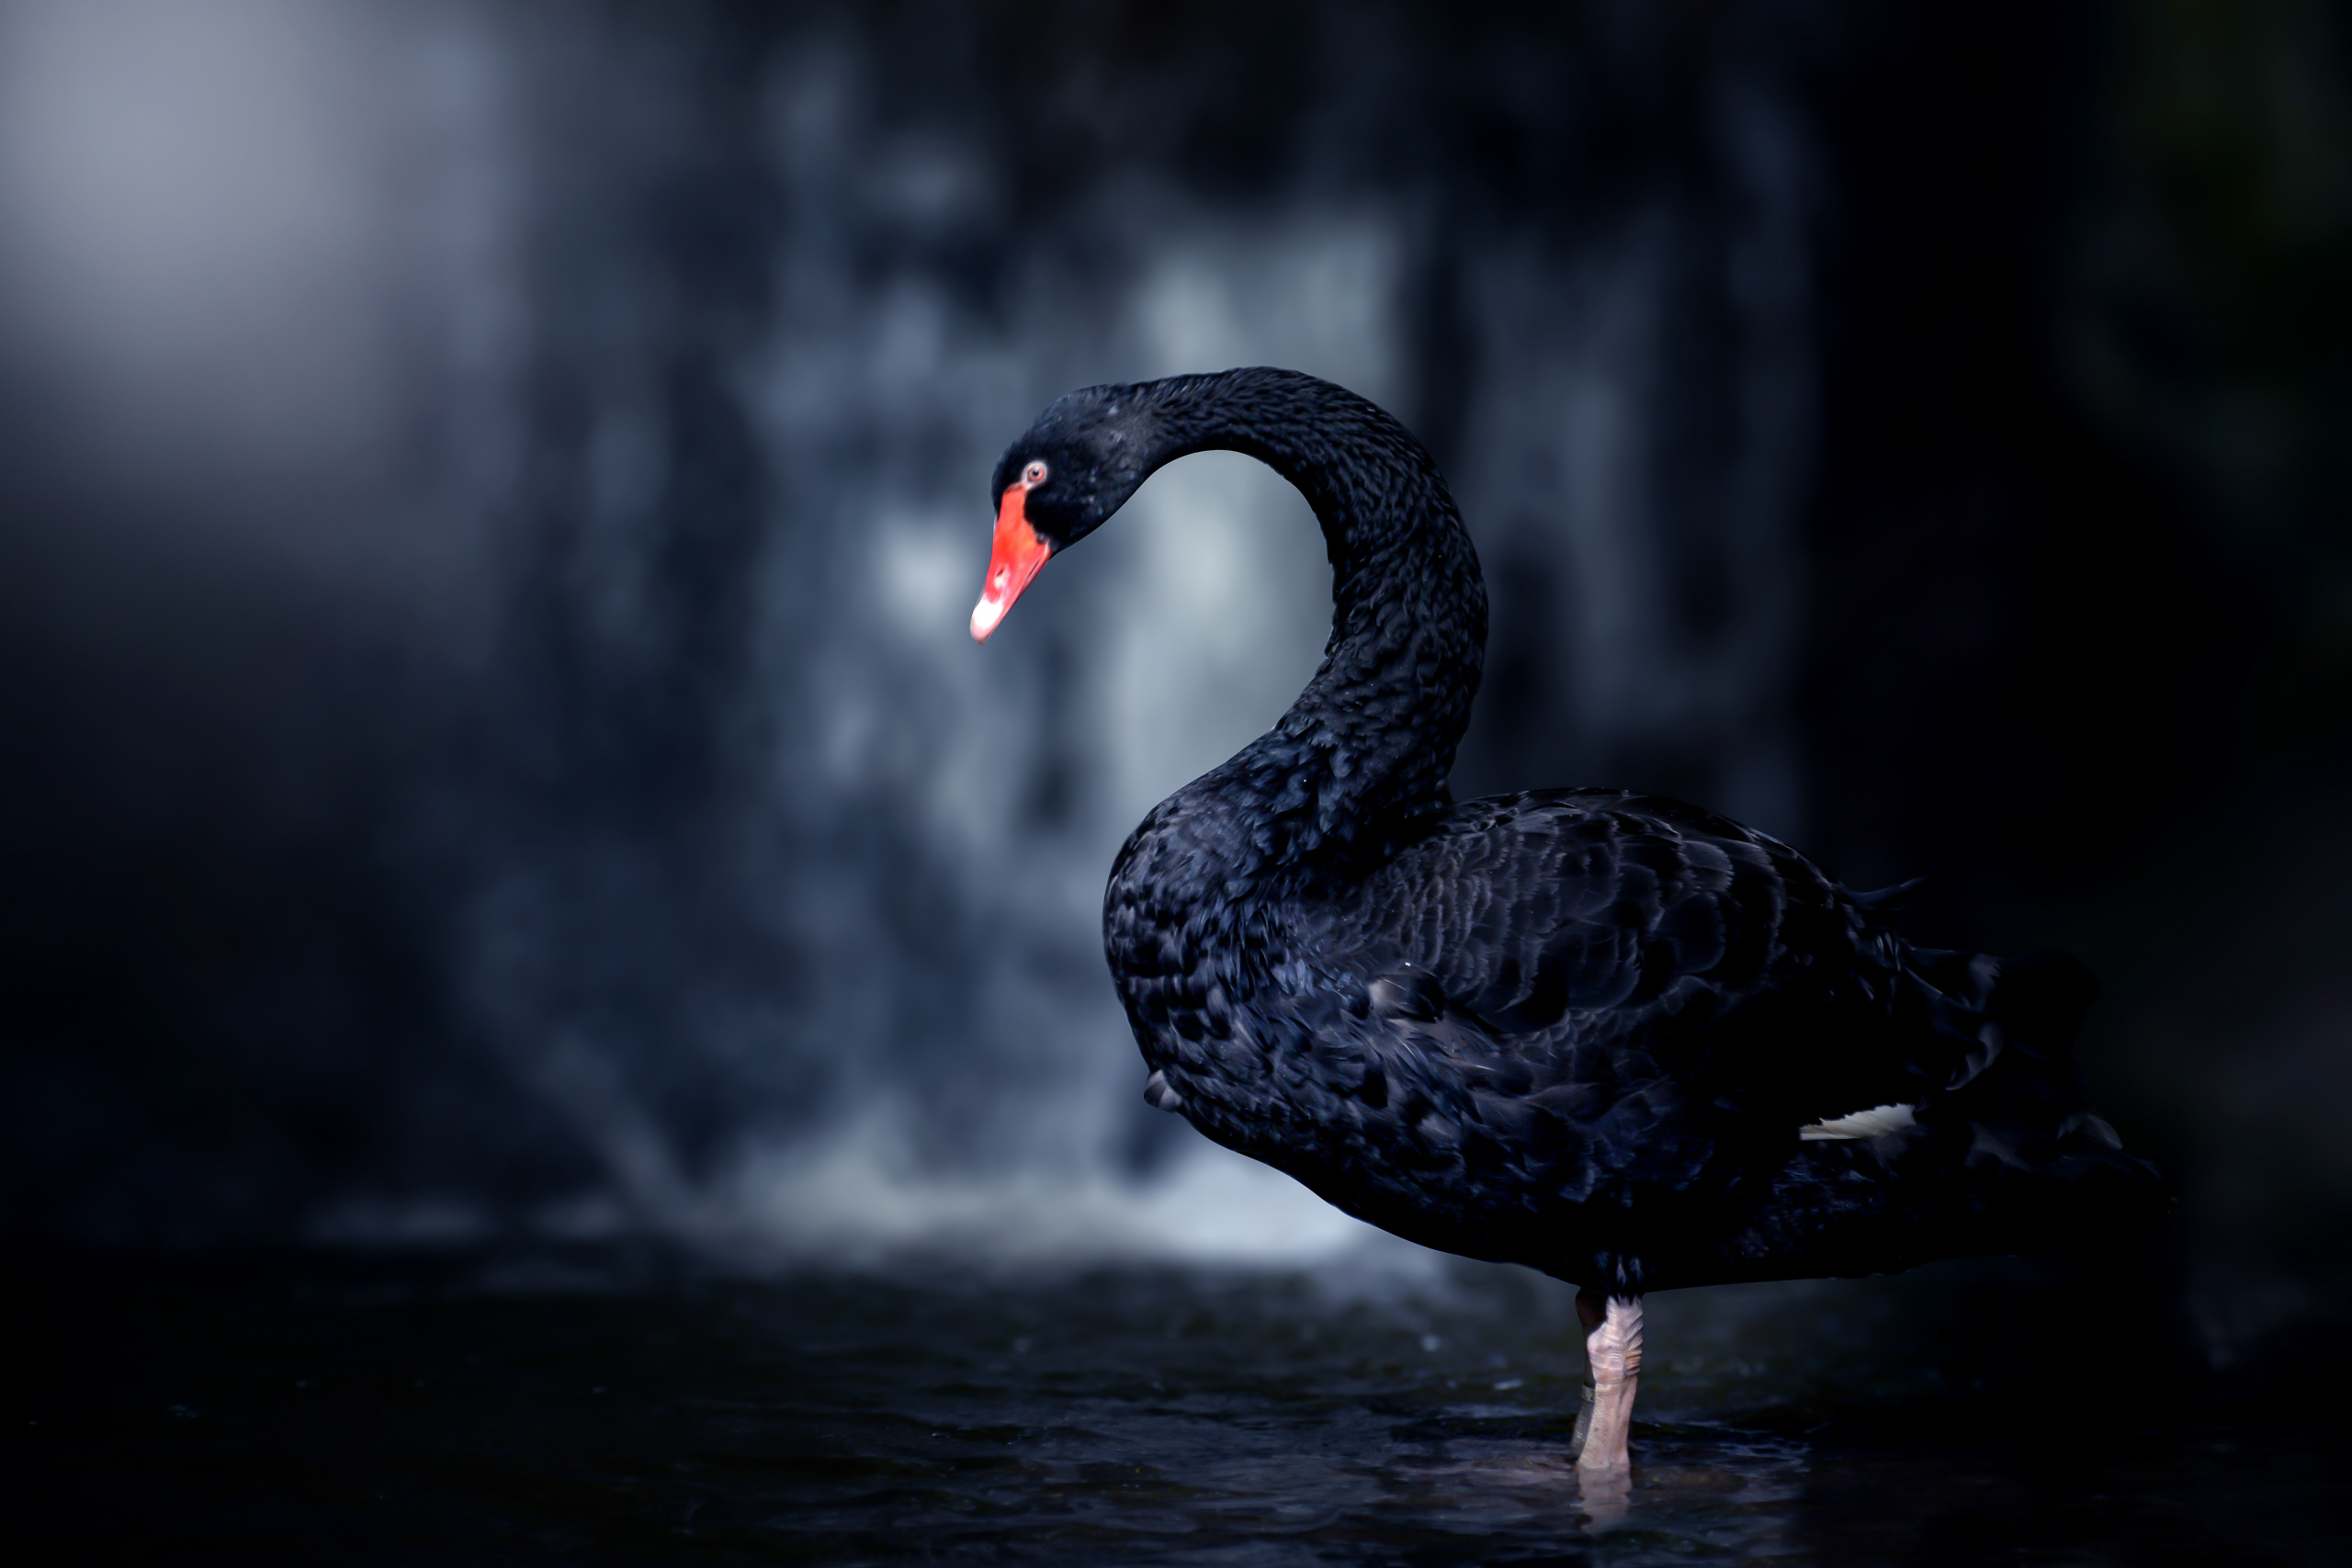 Author Black Swan: 